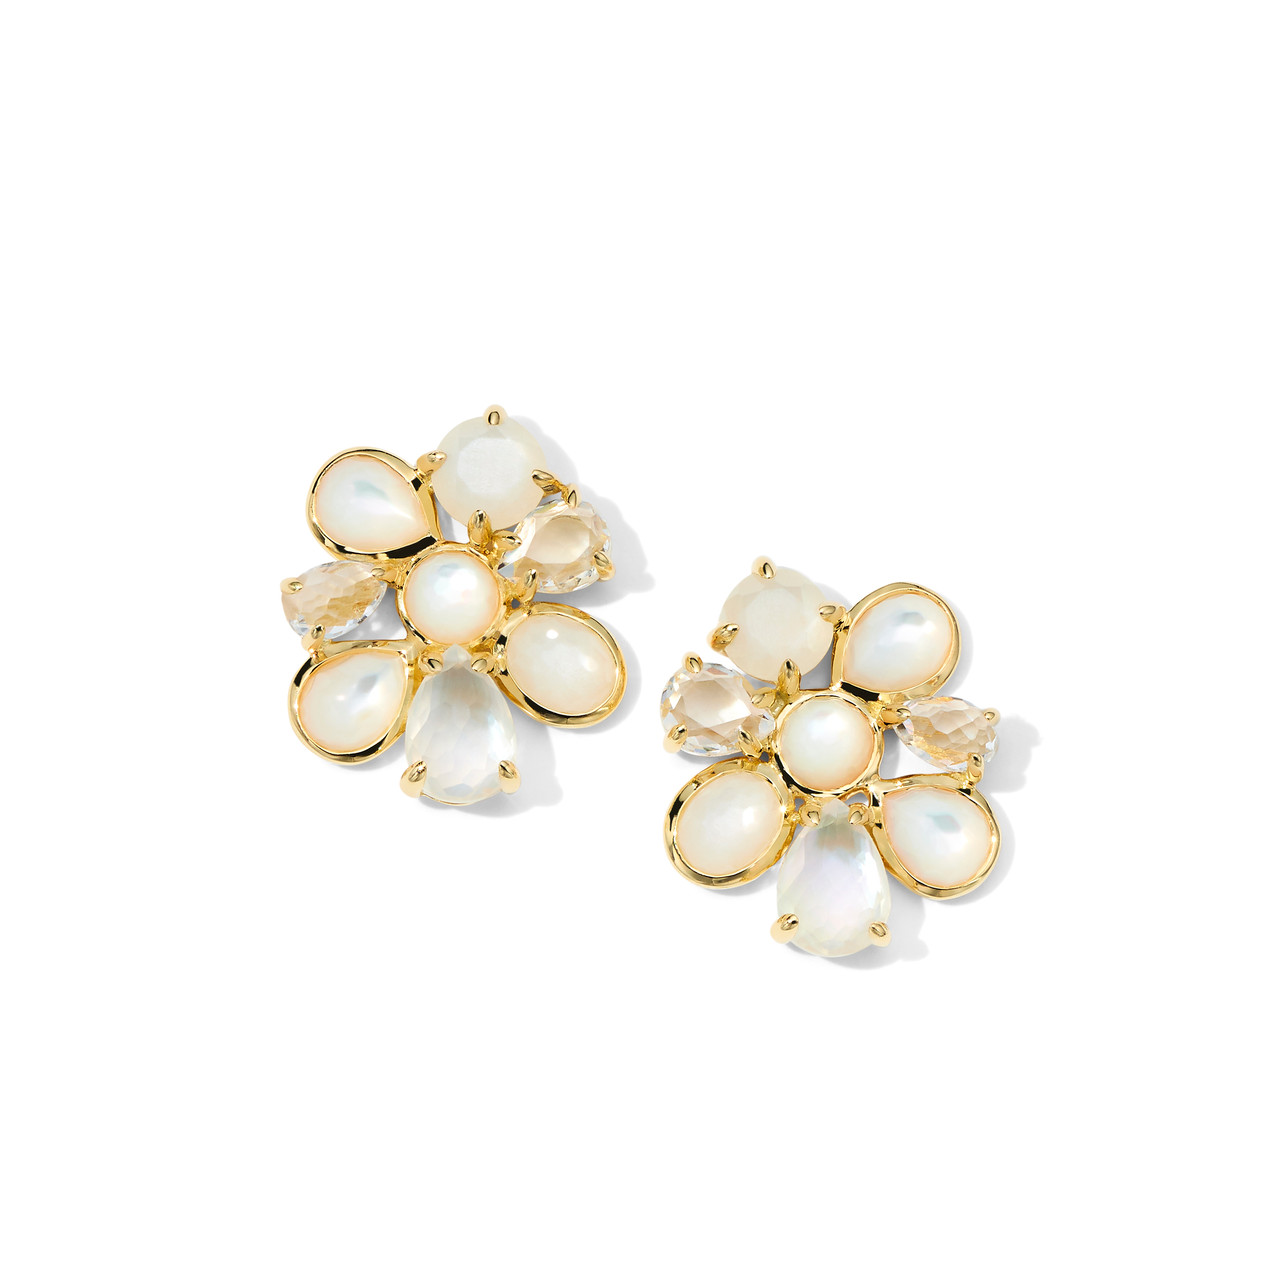 Ippolita Luce 4-Stone Post Earrings in 18K Gold